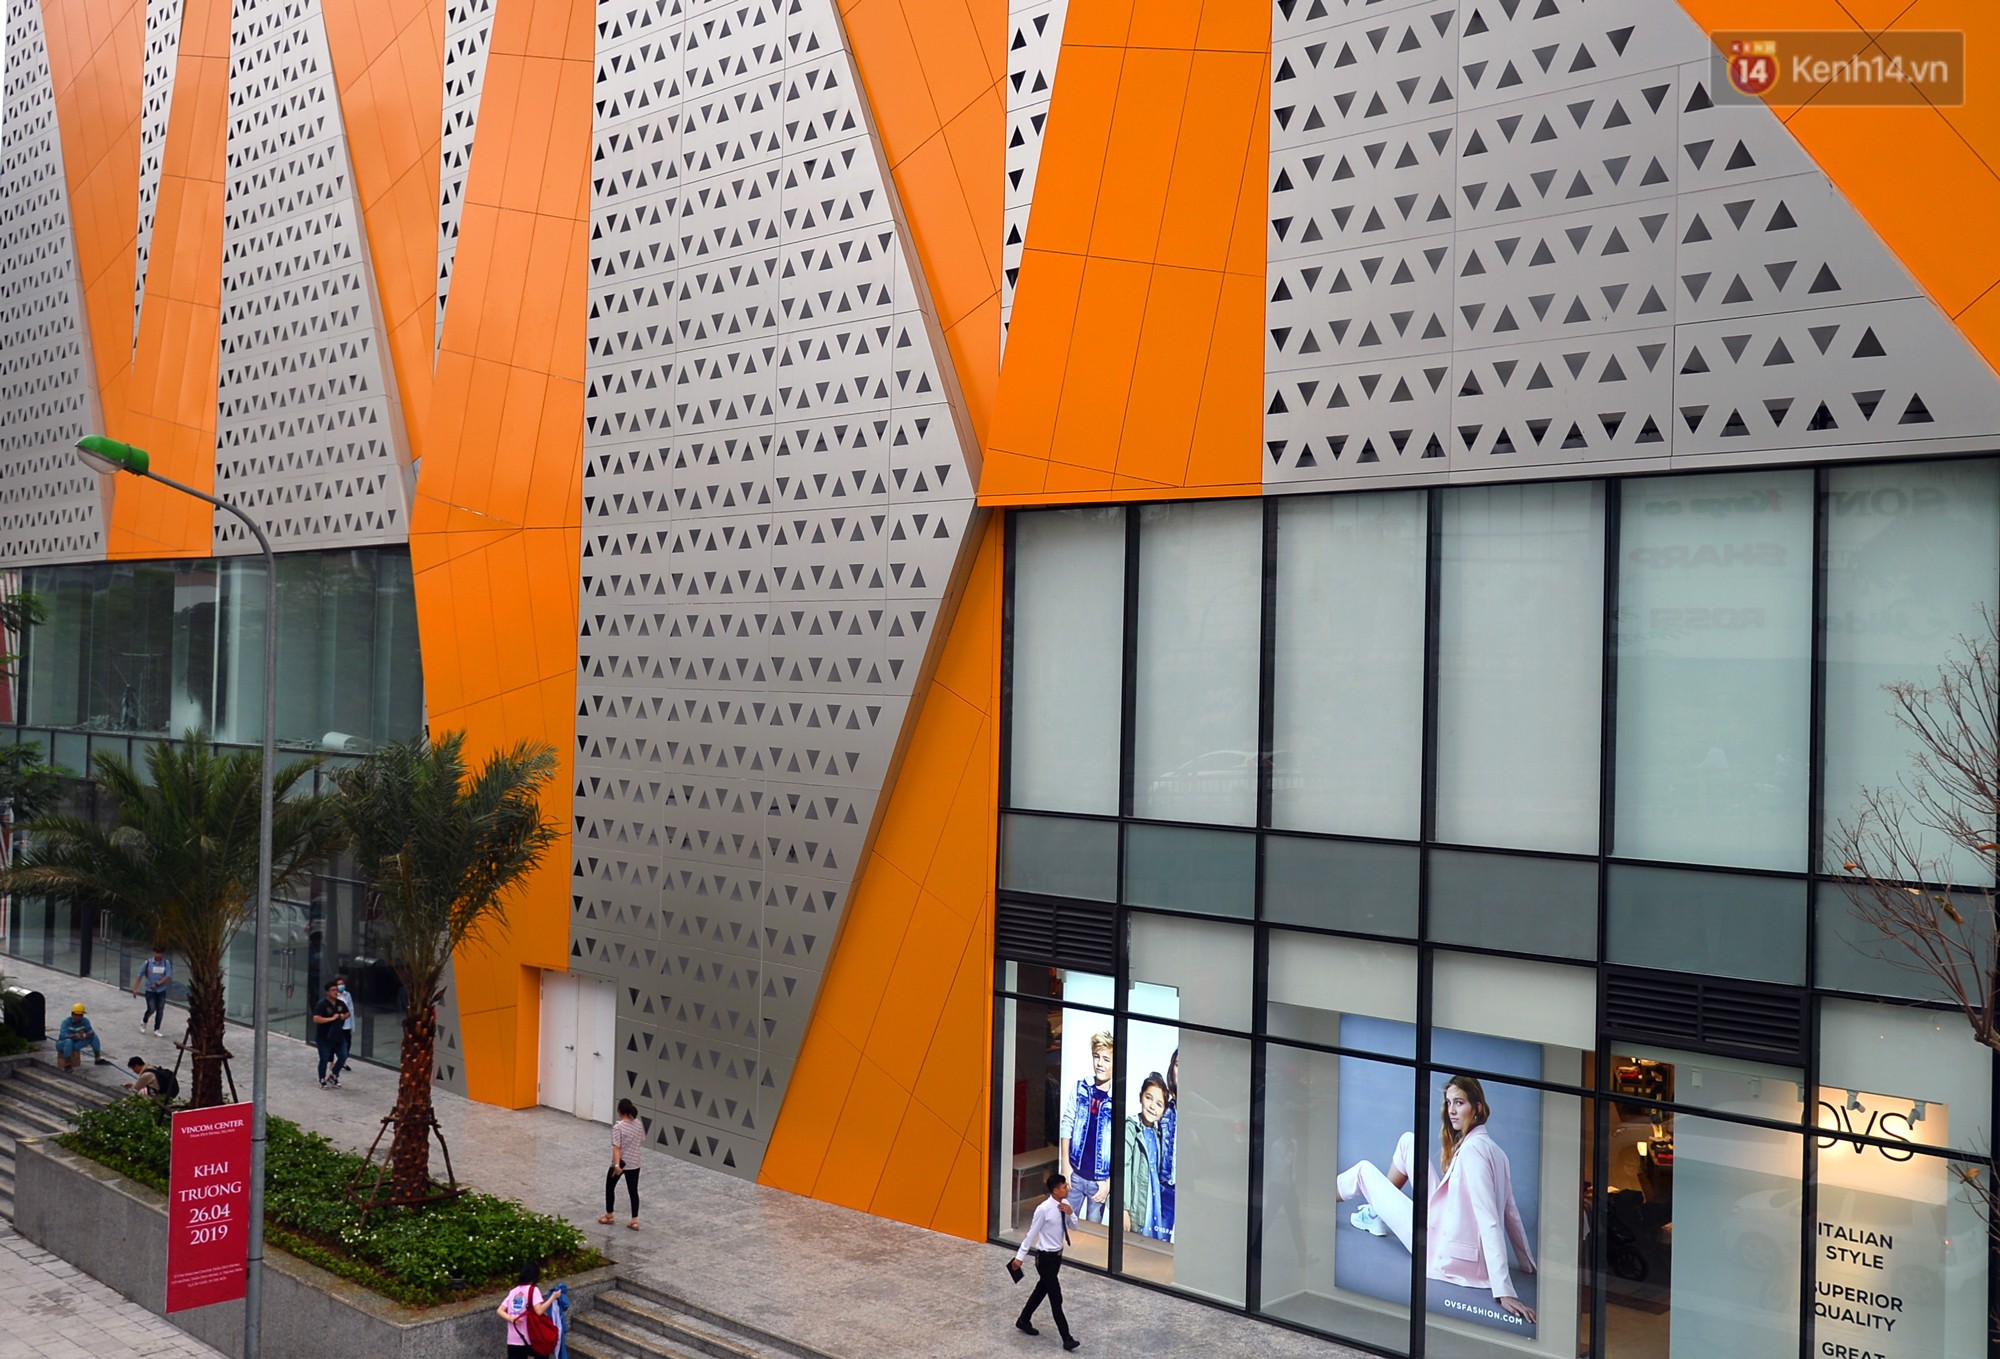 Hà Nội: Chính thức khai trương Vincom Center thứ 10 tại Trần Duy Hưng - Ảnh 8.